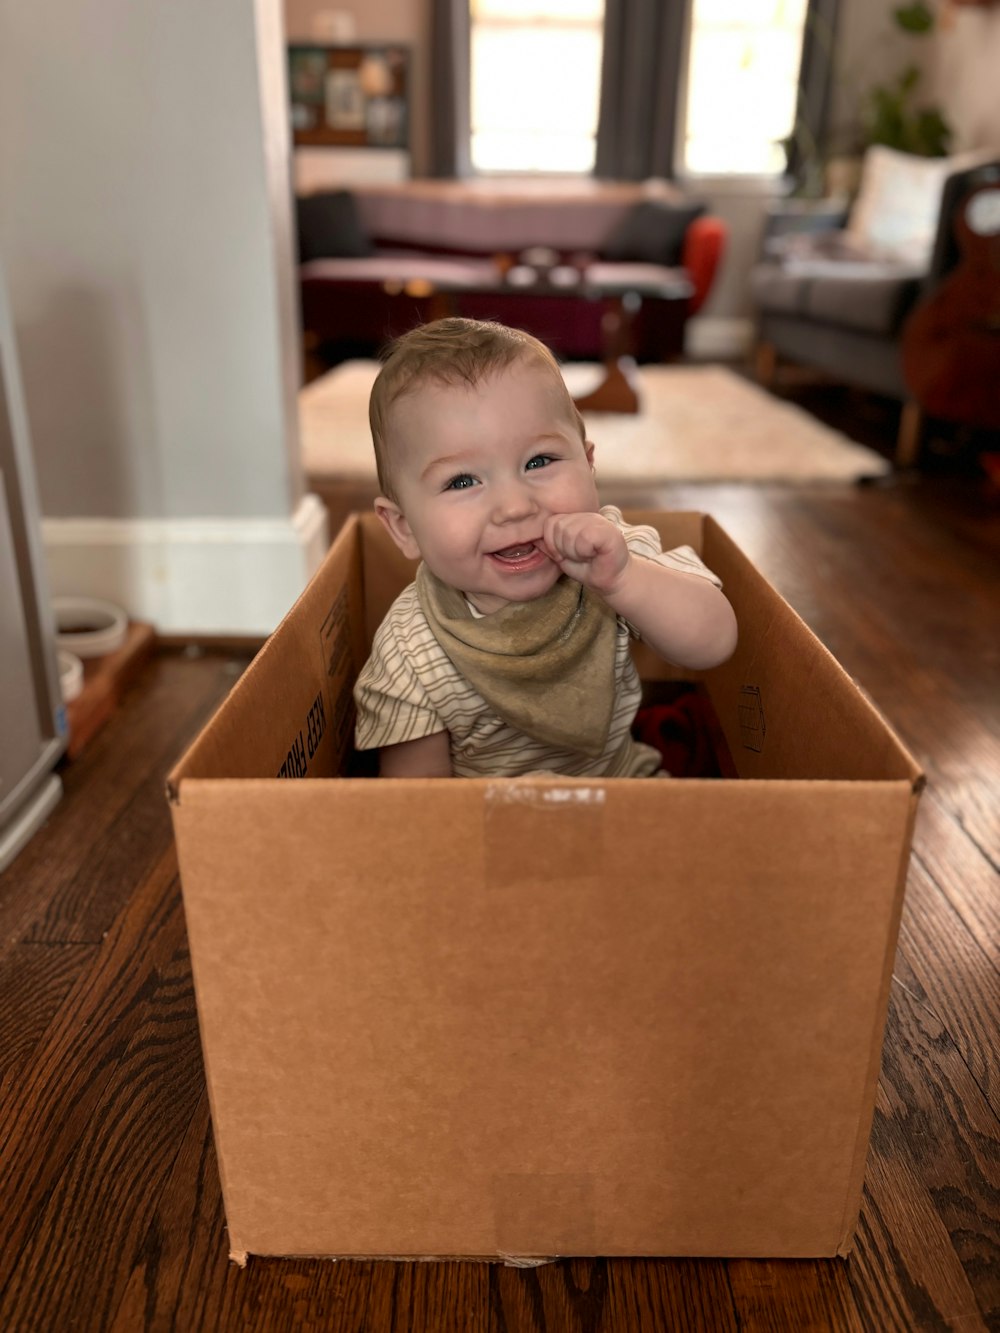 a baby sitting inside of a cardboard box